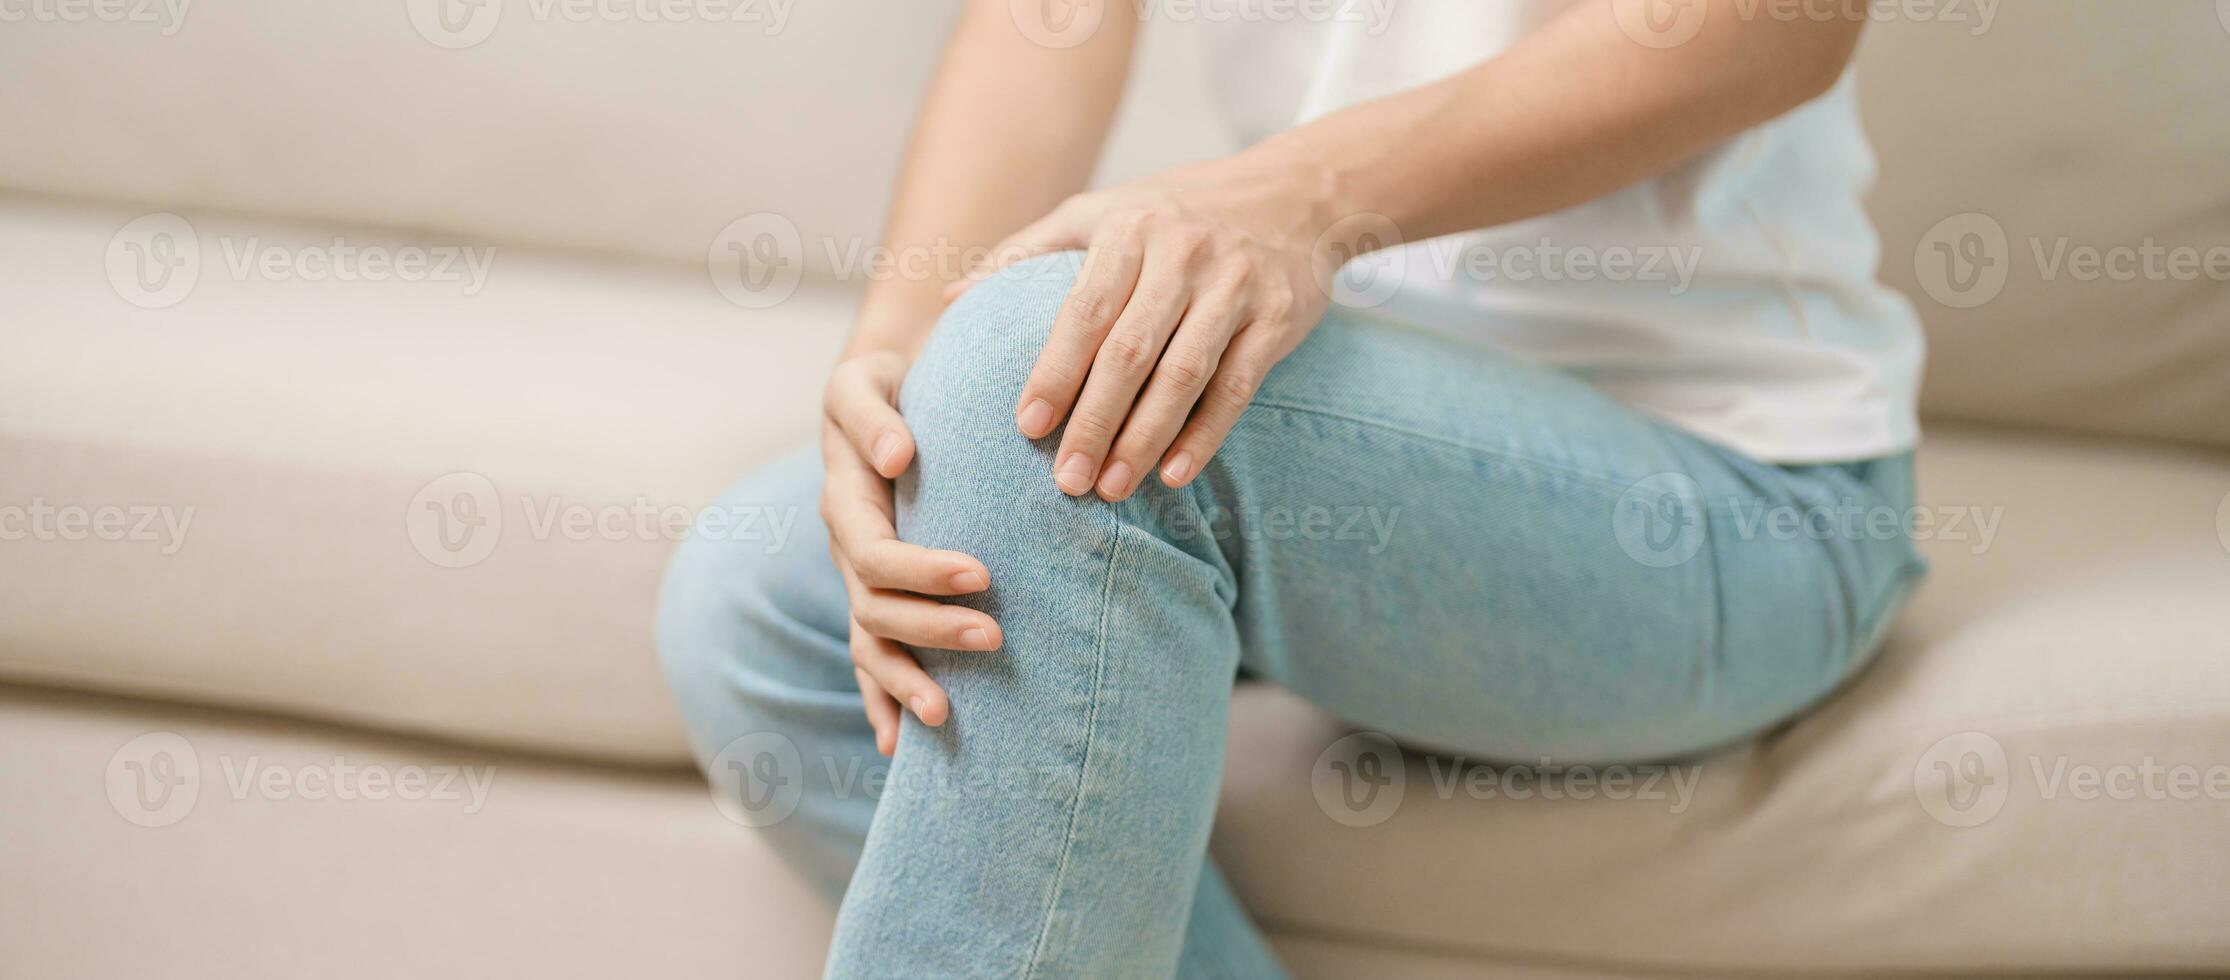 kvinna har knä värk och muskel smärta på grund av till löpare knä eller patellofemoral smärta syndrom, artros, artrit, reumatism och patellar tendinit. medicinsk begrepp foto